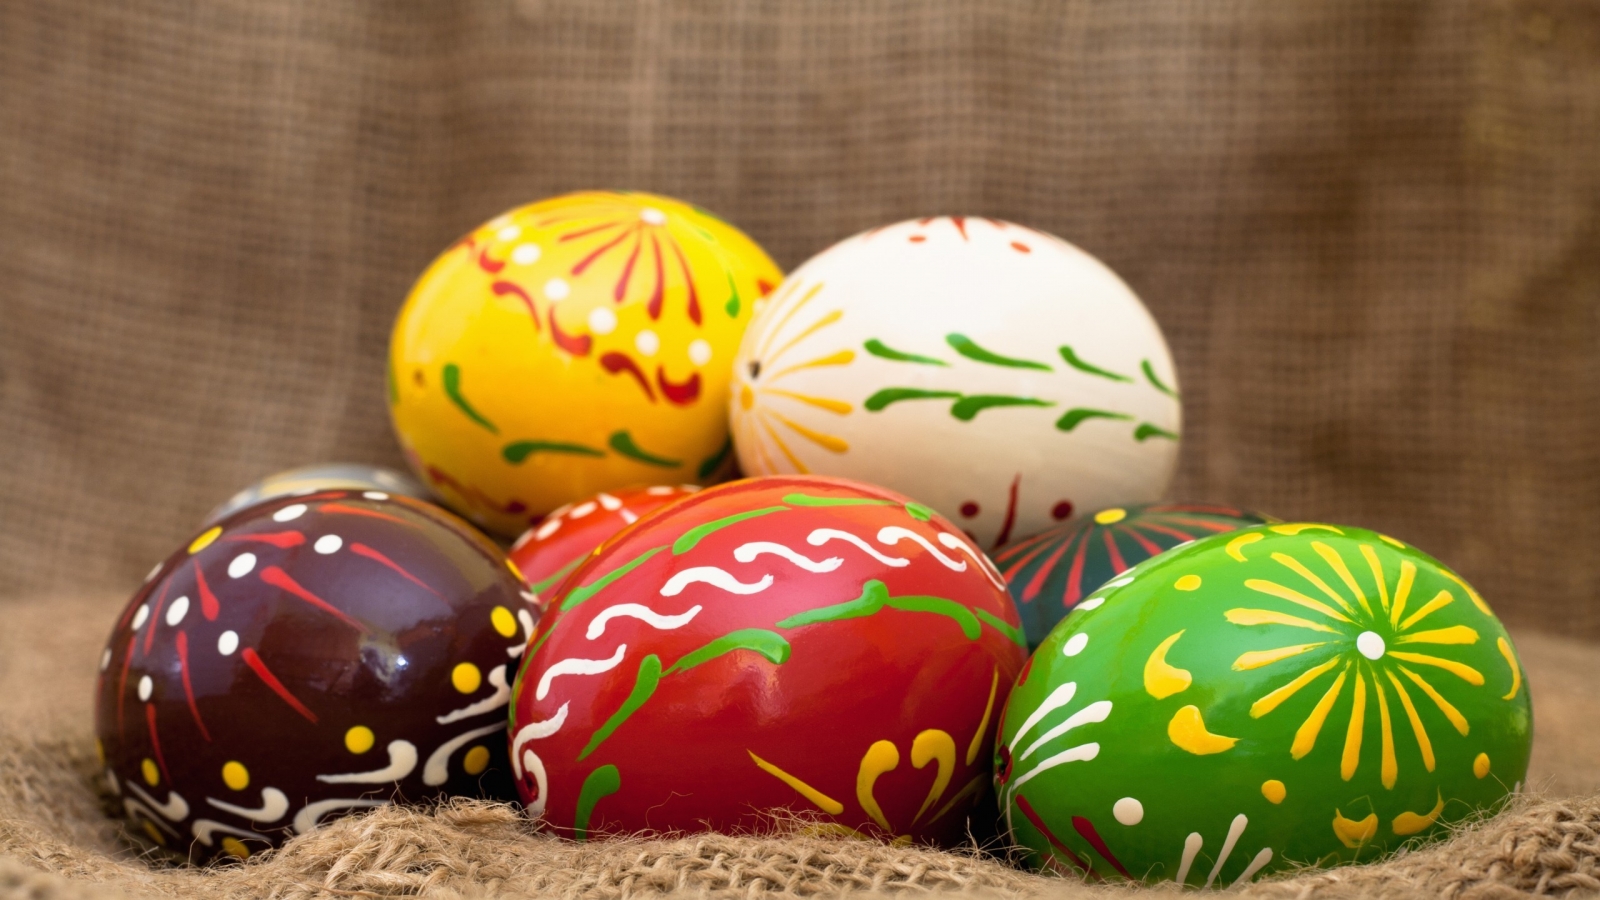 Handmade Easter Eggs for 1600 x 900 HDTV resolution